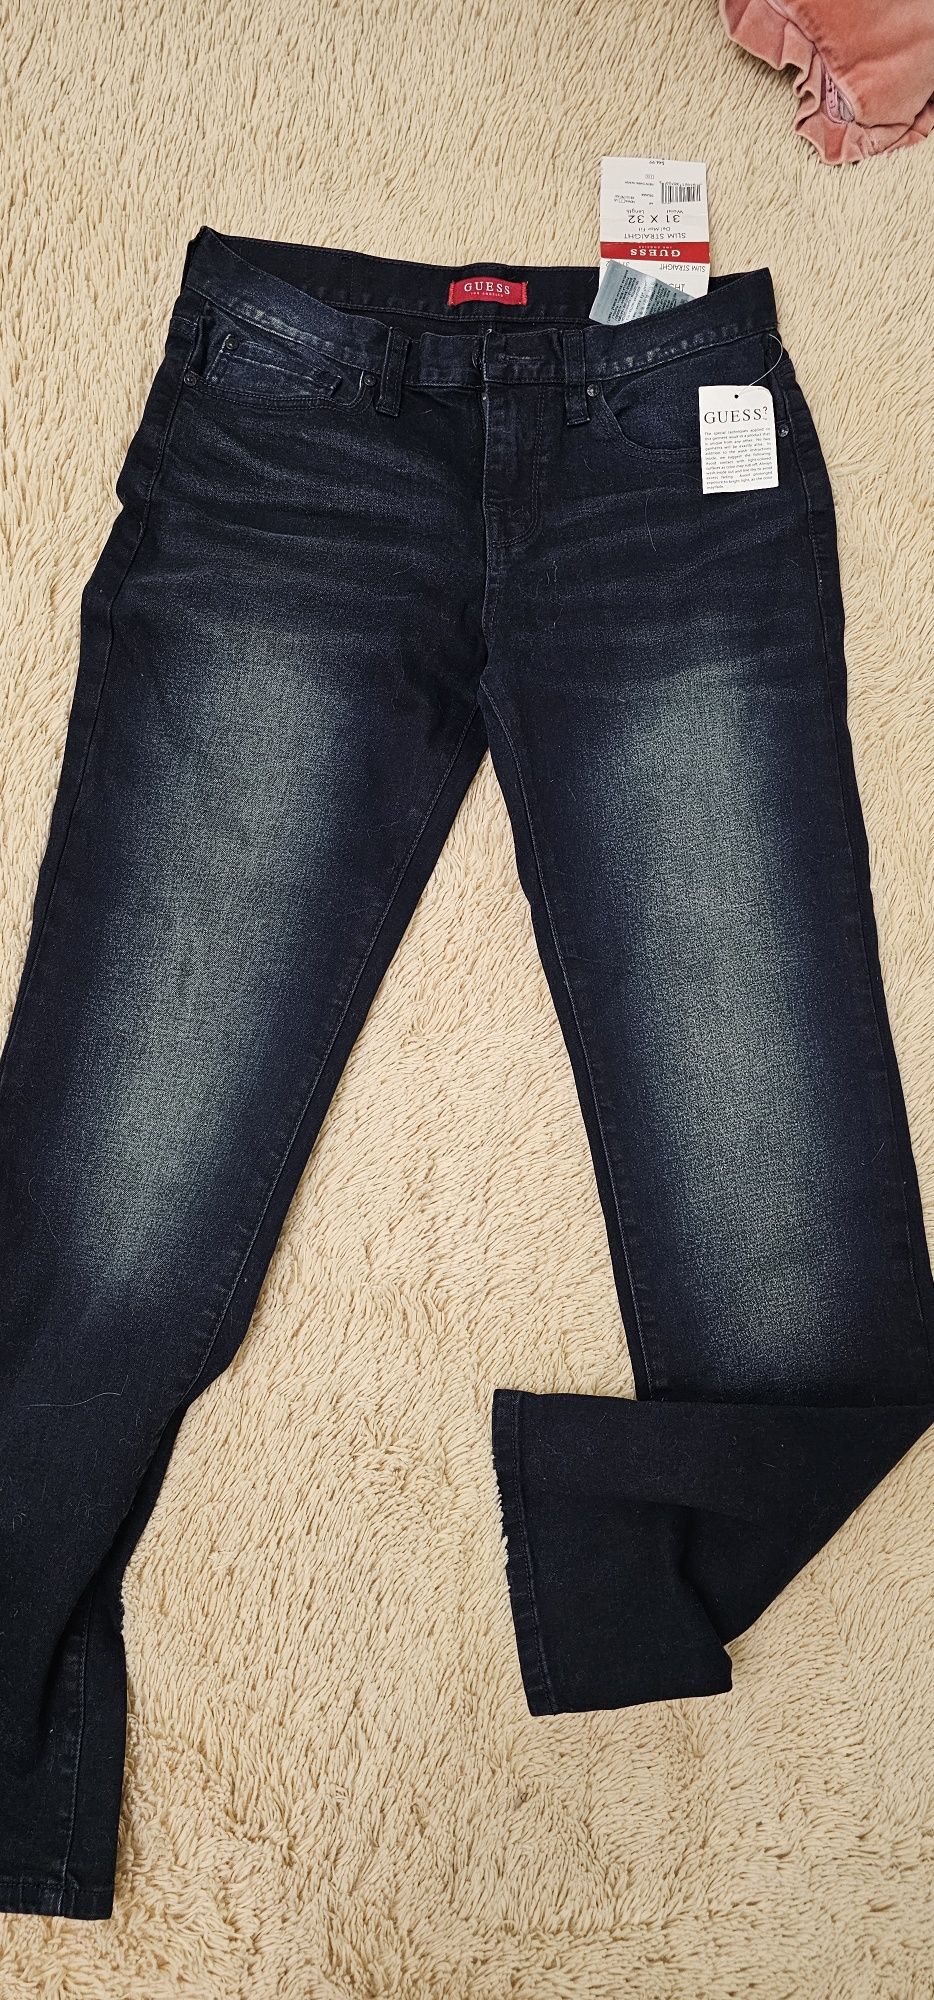 CUESS джинсы мужские новые, оригинал